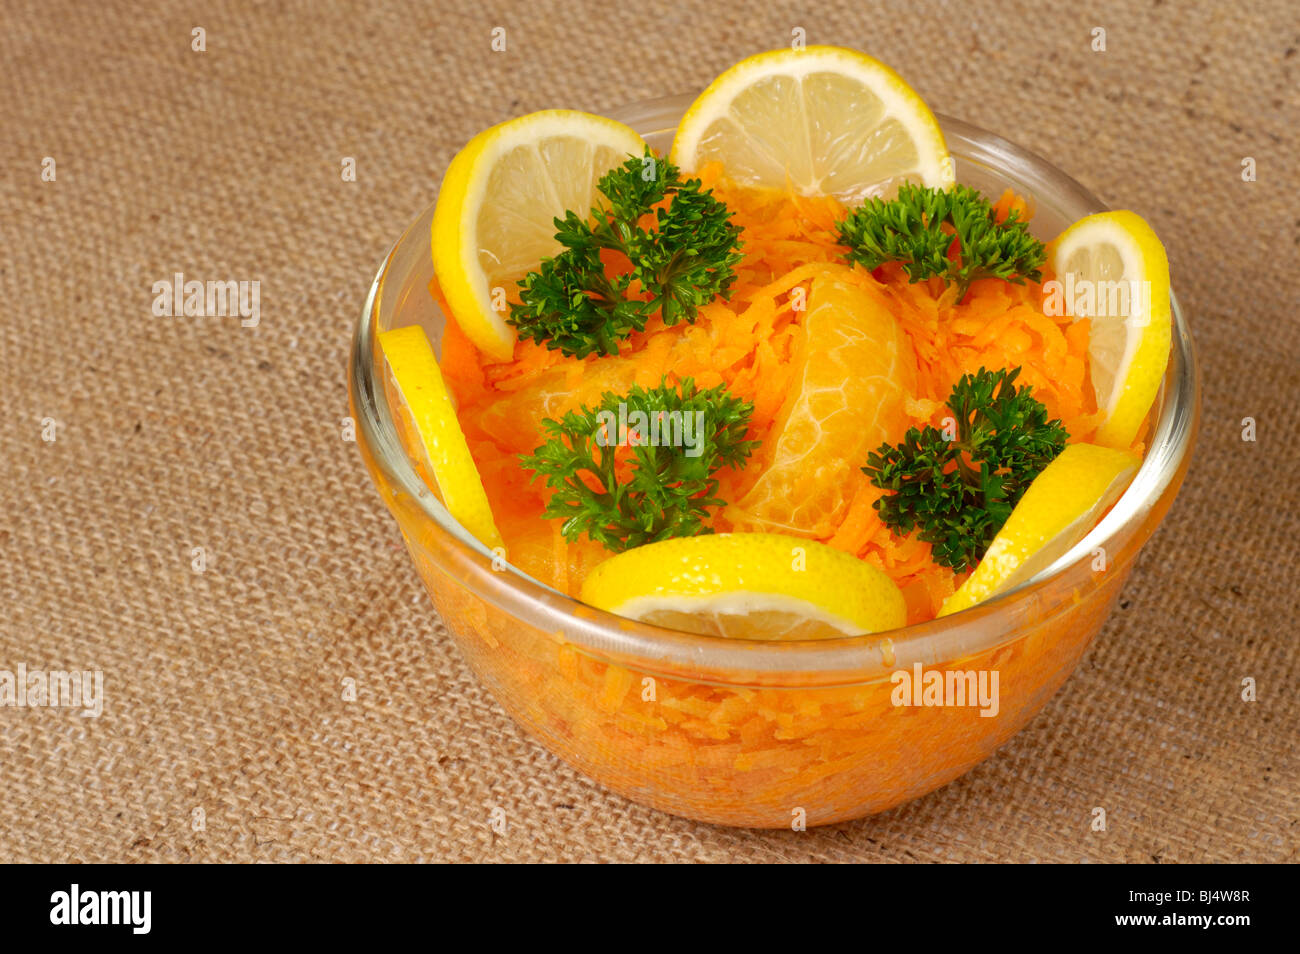 Salade de carottes râpées marocain appétissant avec orange still life Banque D'Images